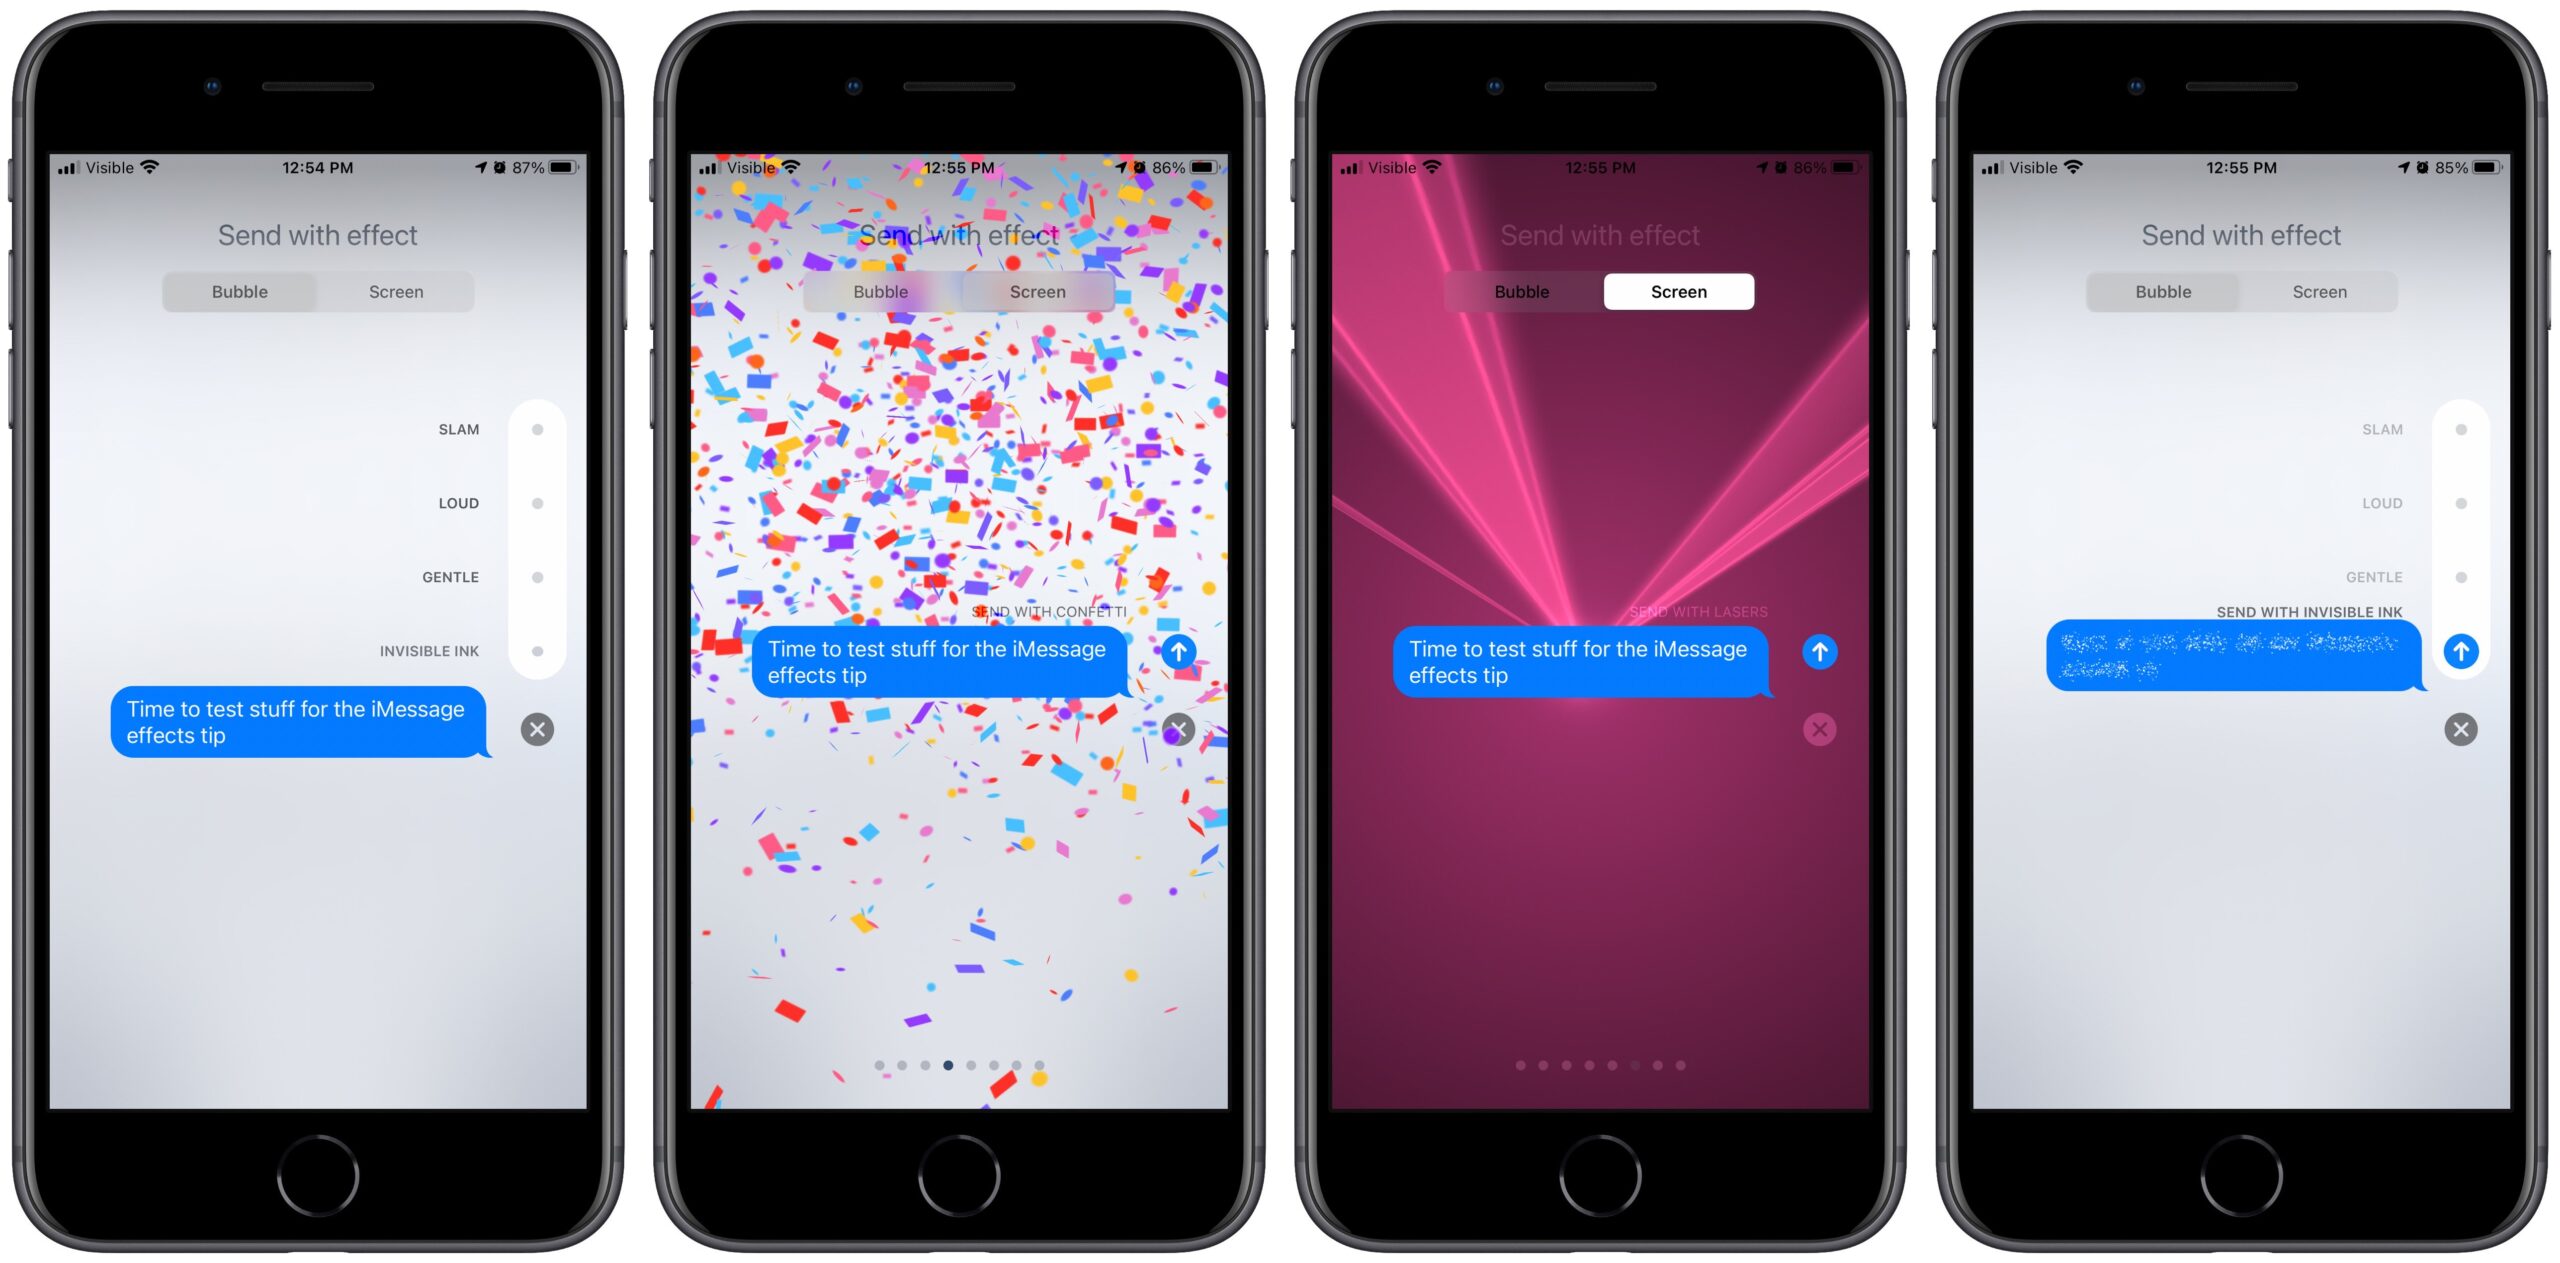 Aquí están todos los efectos de mensaje que puede enviar en dispositivos Apple